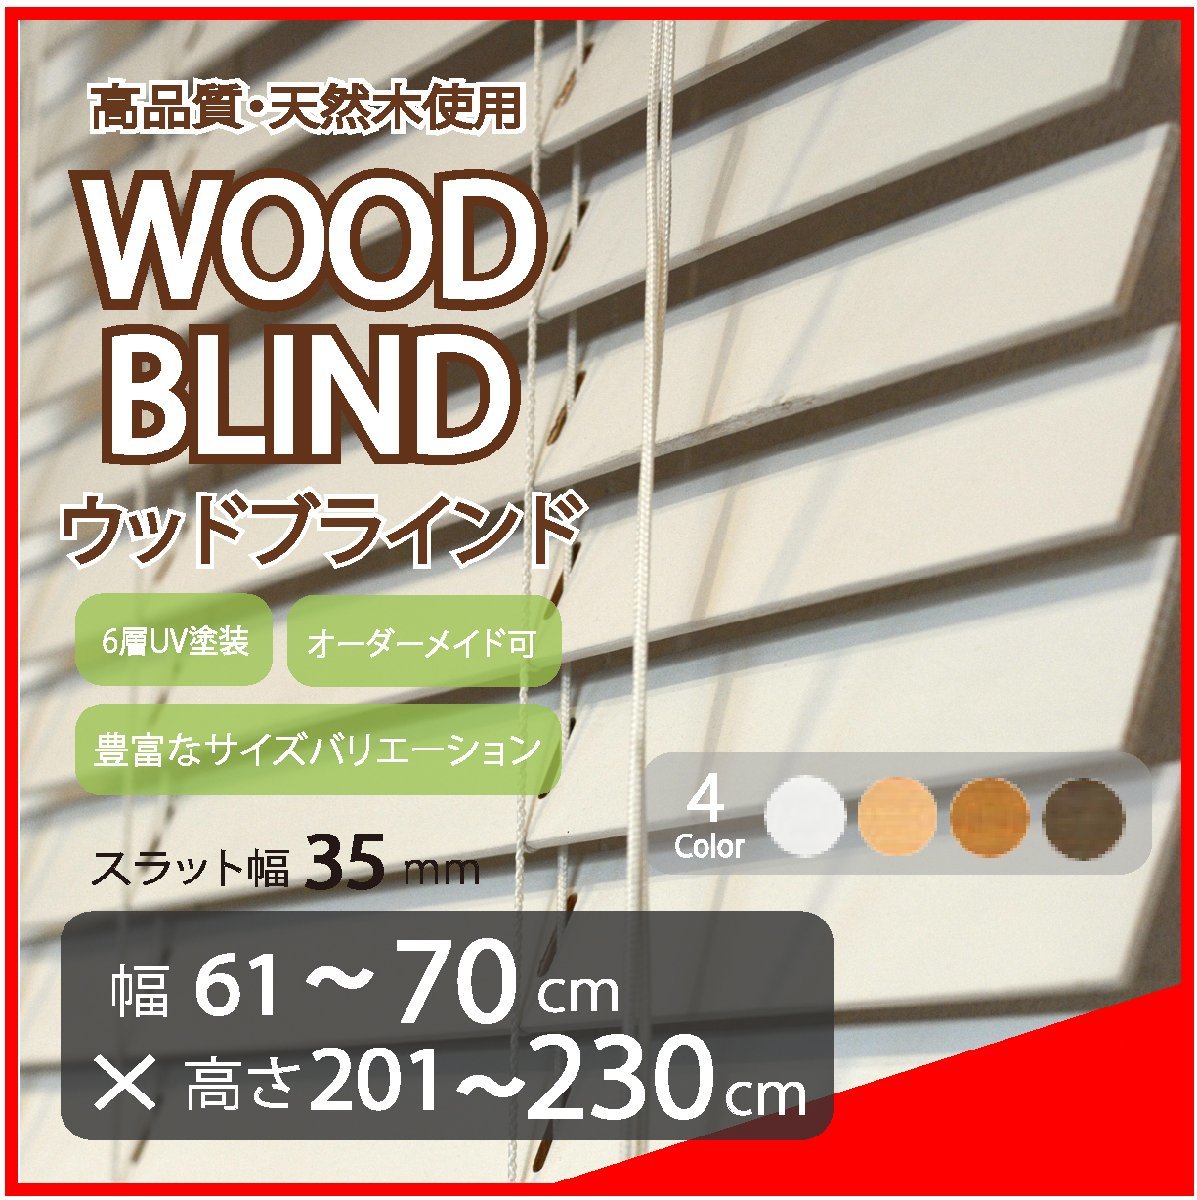 窓枠に合わせてサイズ加工が可能 高品質 木製 ウッド ブラインド オーダー可 スラット(羽根)幅35mm 幅61～70cm×高さ201～230cm